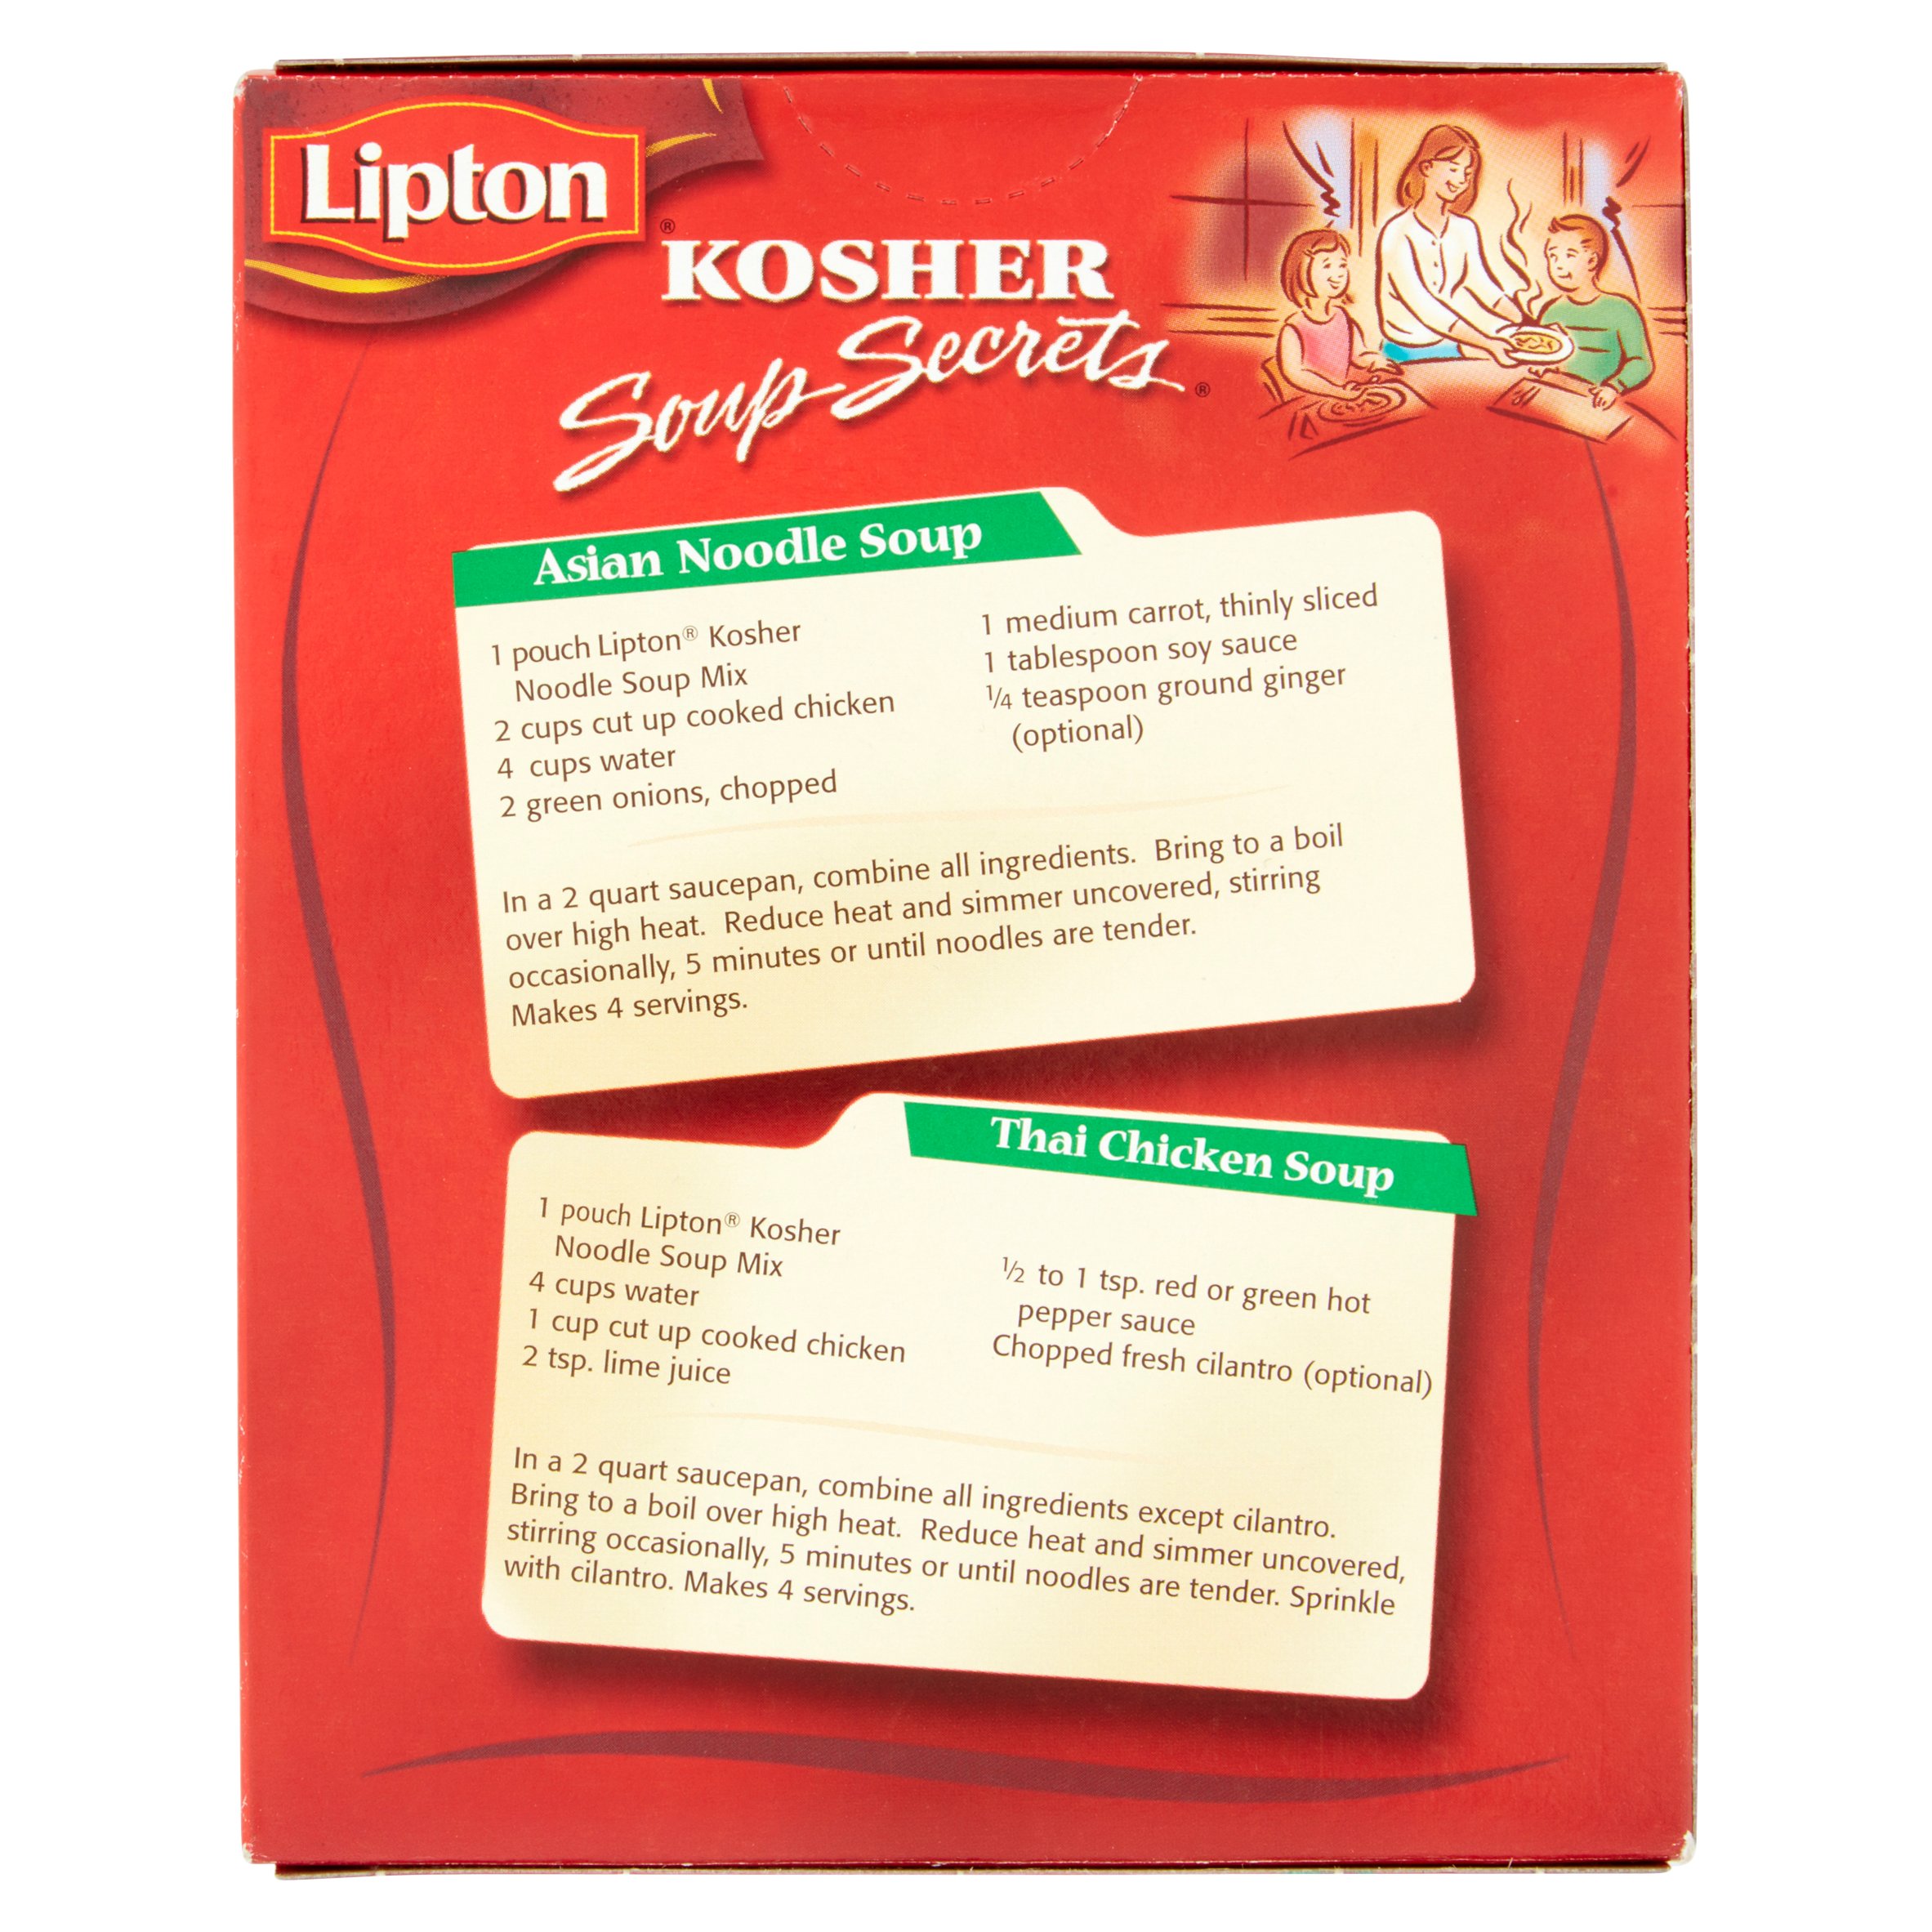 Lipton Soup Secrets Noodle Soup With Chicken, 4.09 oz - image 4 of 5